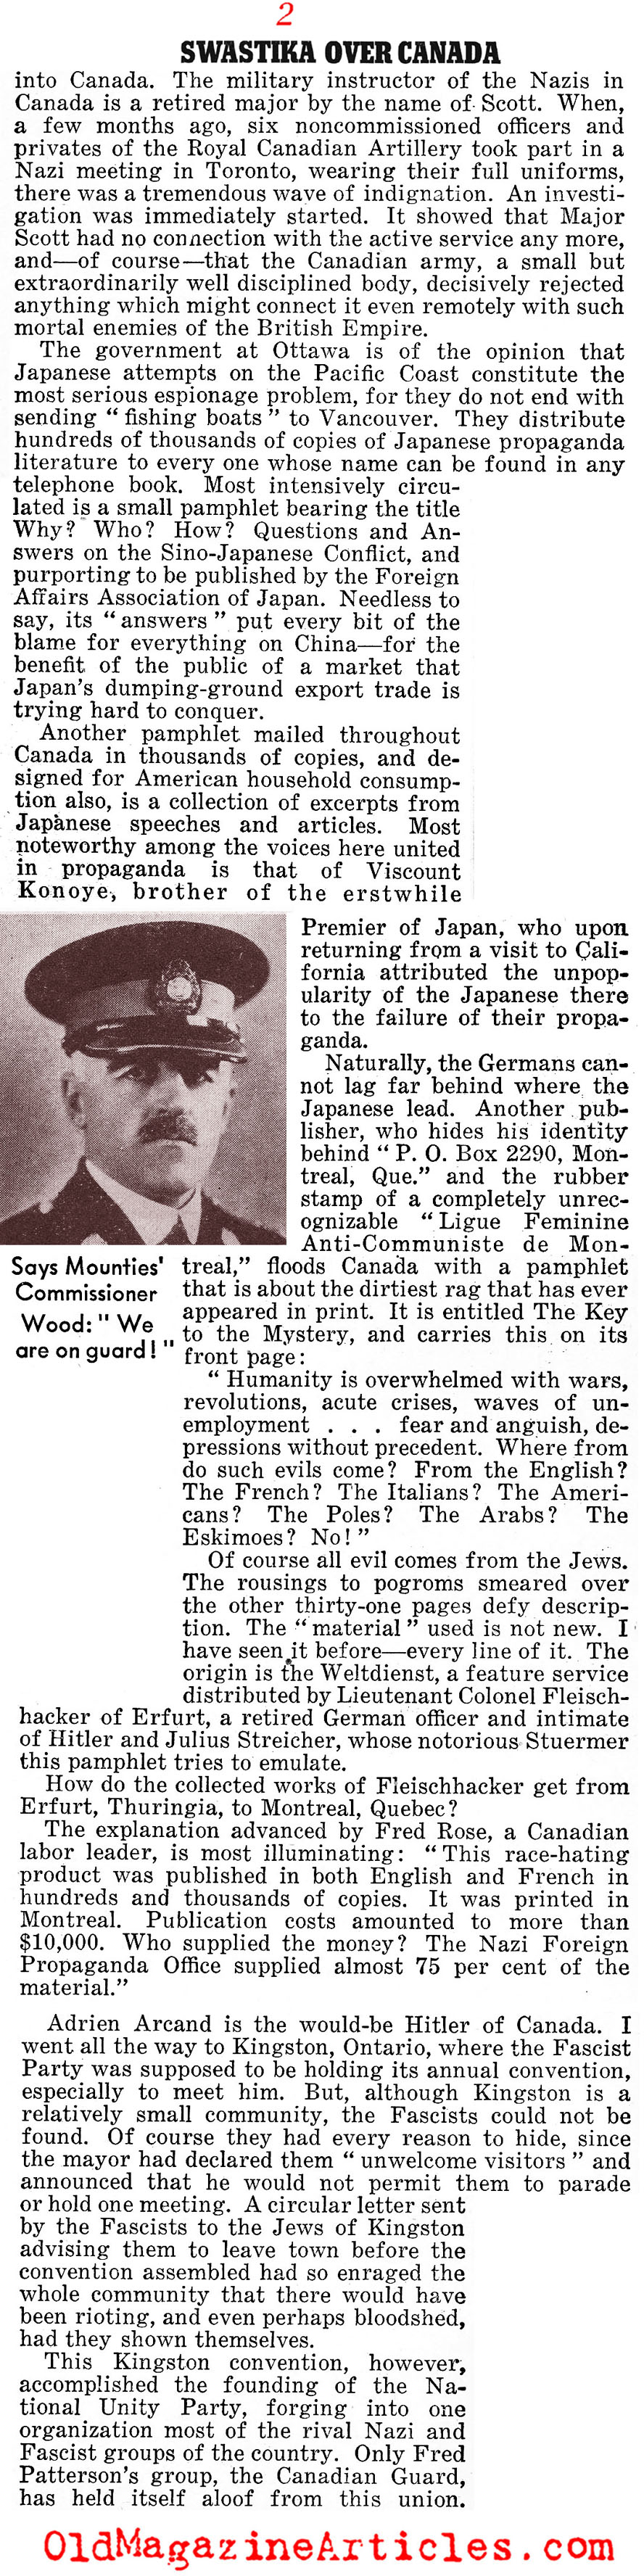 Canadian Nazis (Liberty Magazine, 1939)